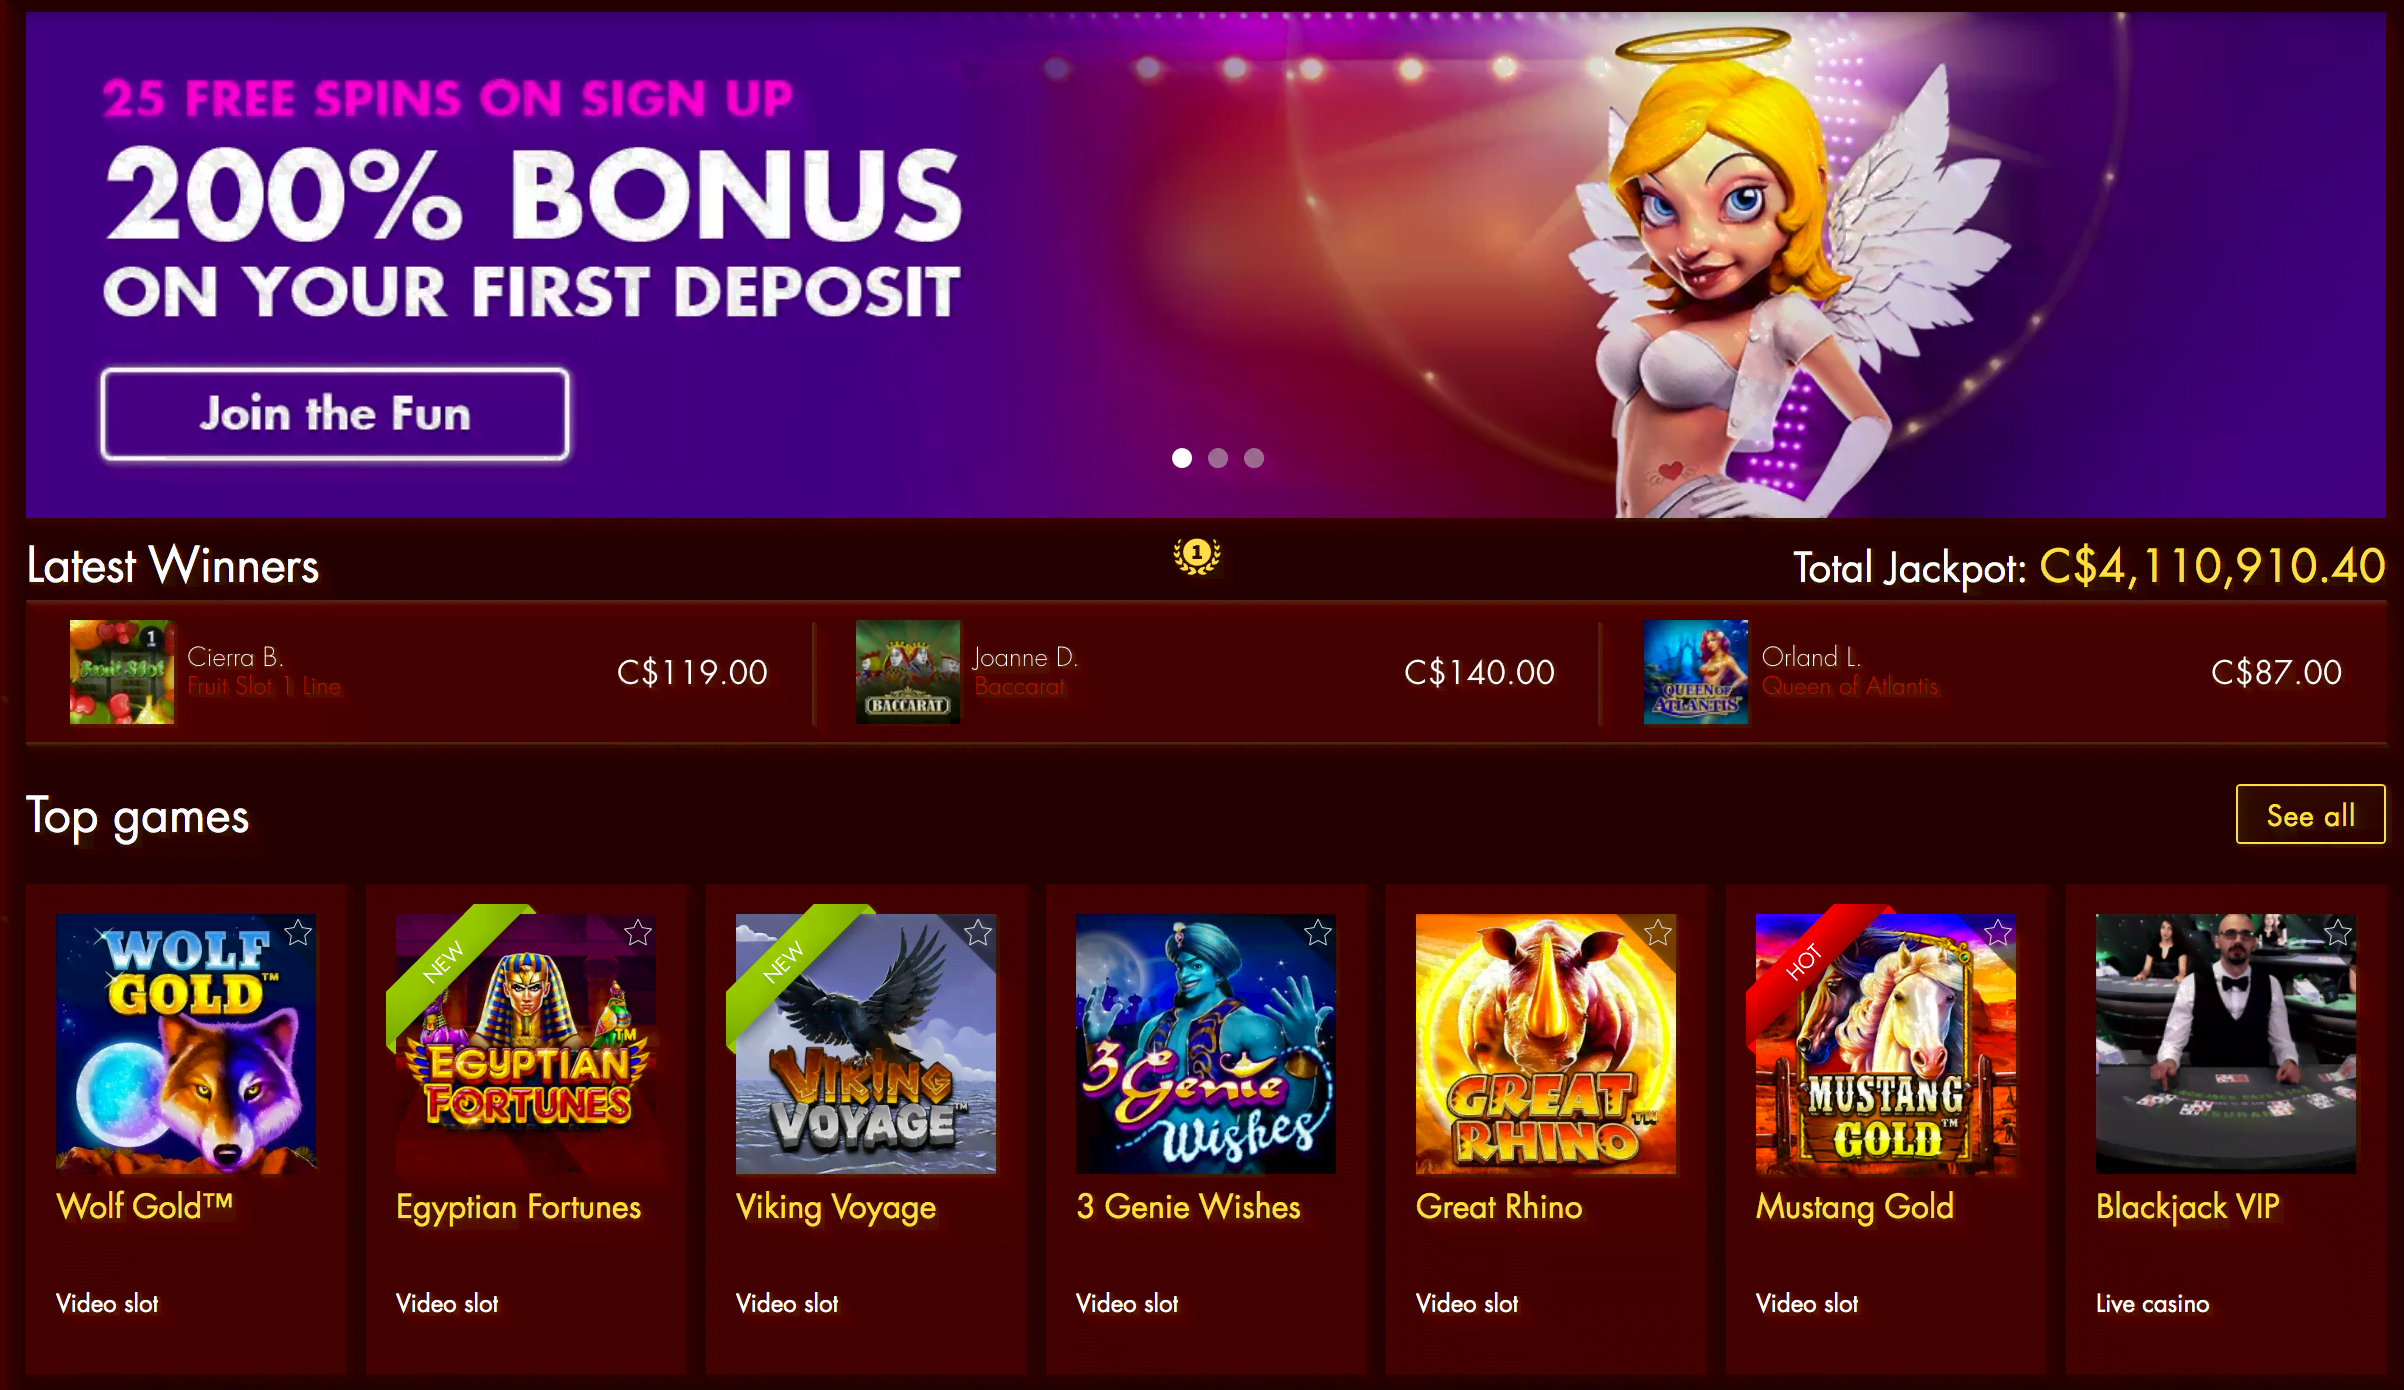 Box24 Casino Bonus